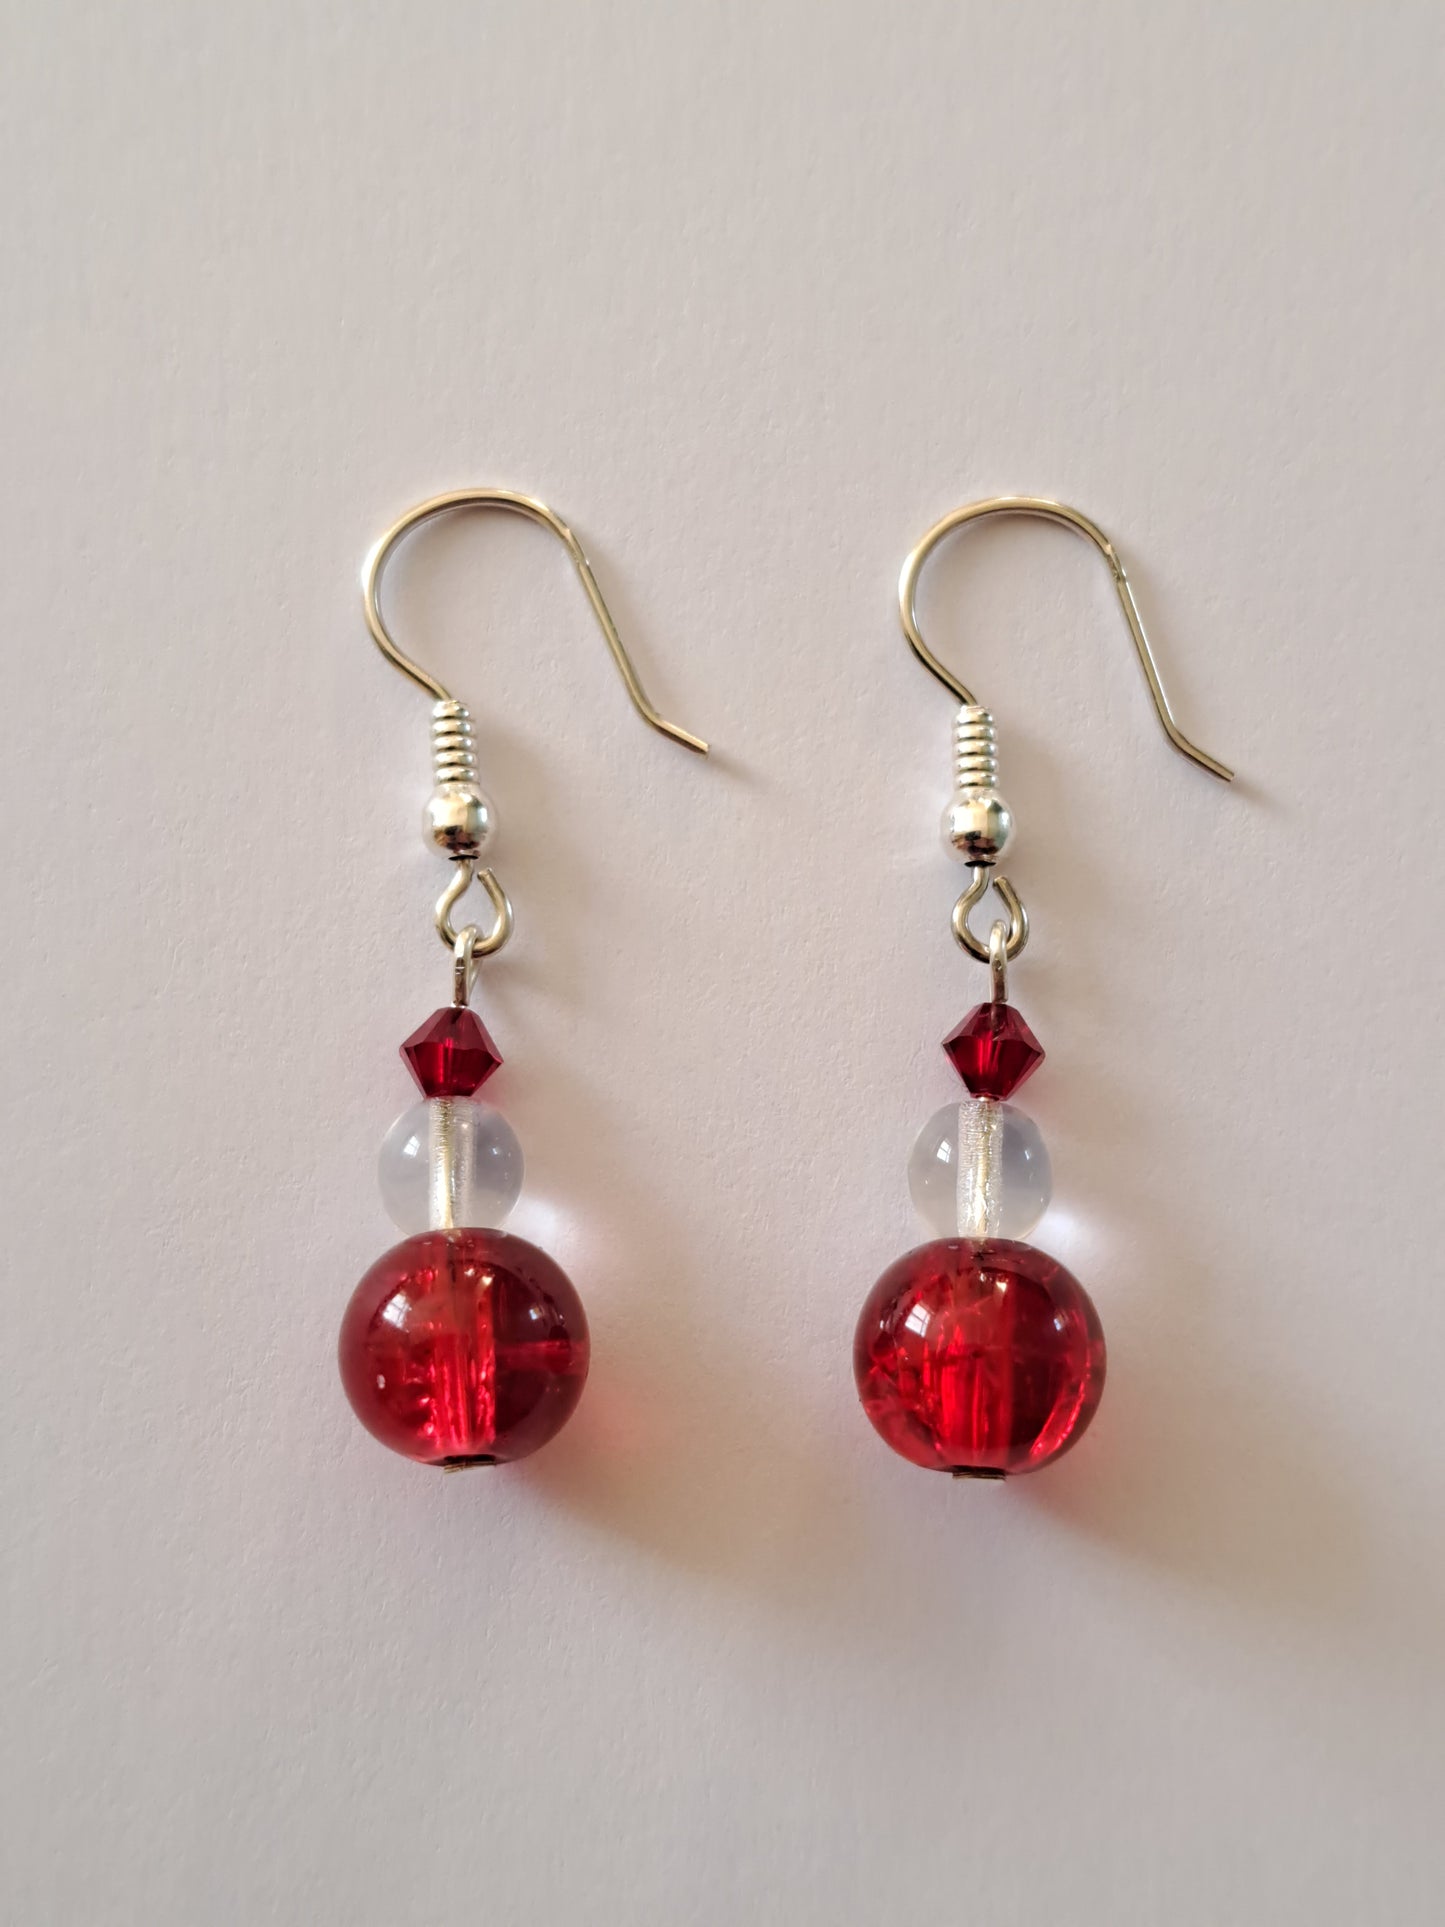 Boucles d'oreilles en argent avec perles blanches et rouges. Site de bijoux en ligne. France